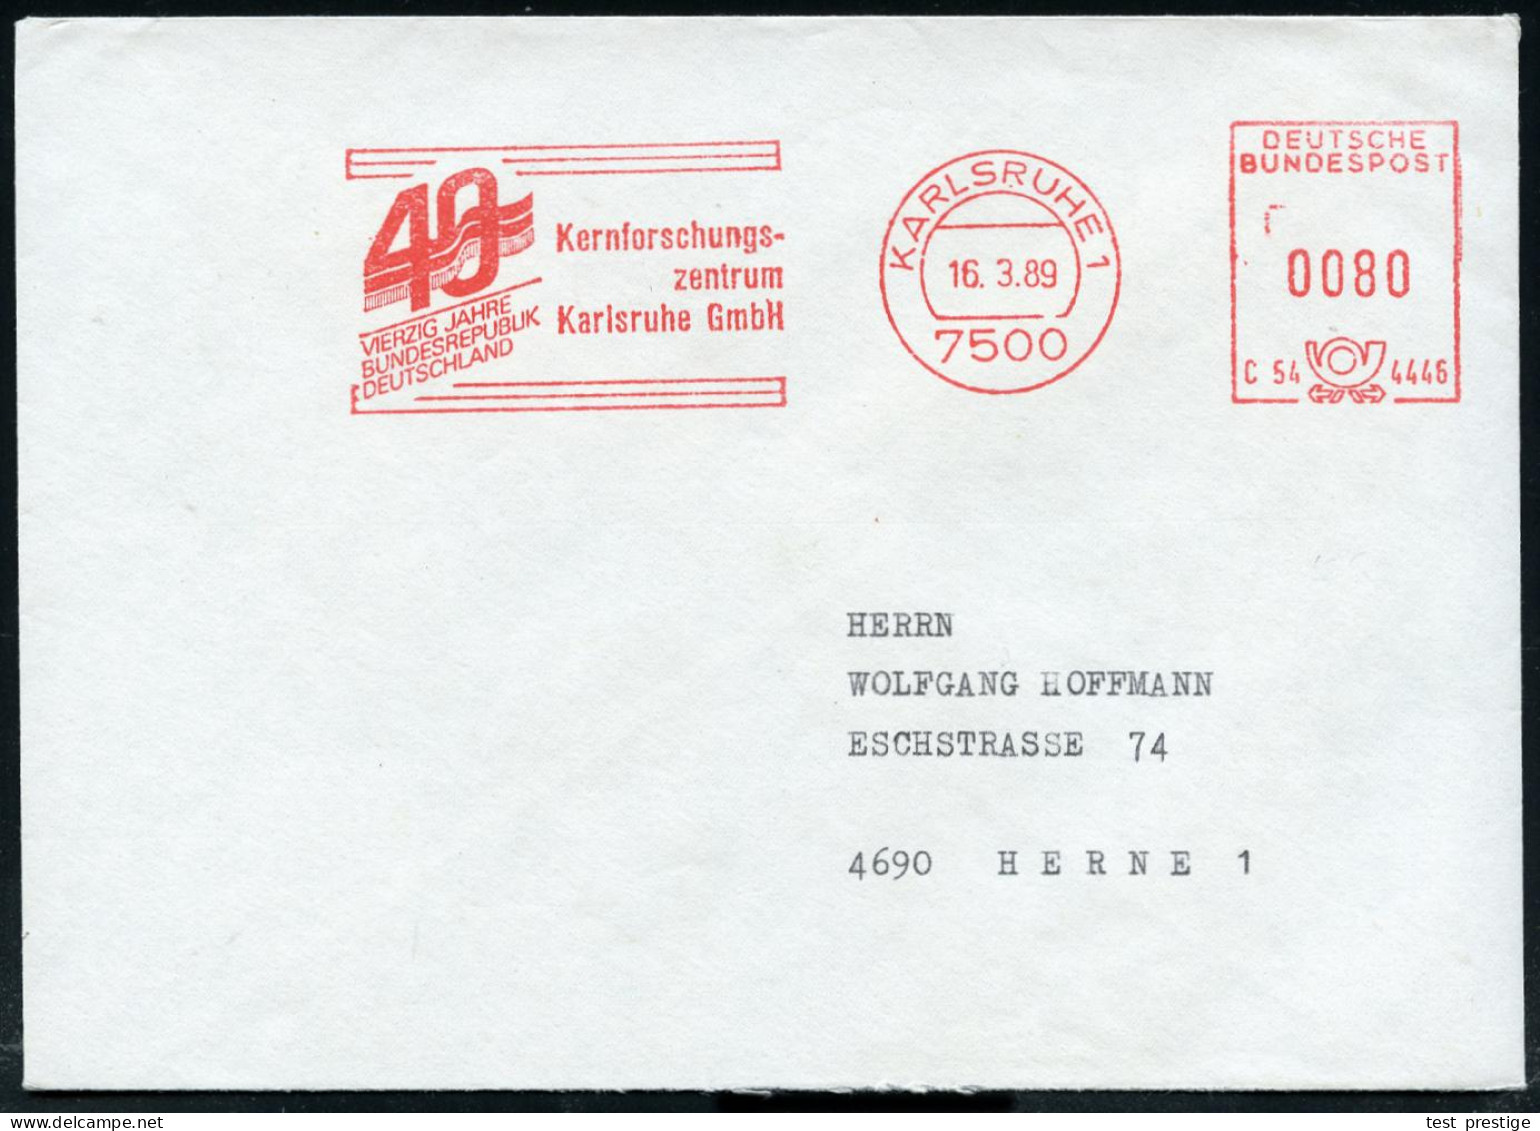 7500 KARLSRUHE 1/ C54 4446/ VIERZIG JAHRE/ BRD/ Kernforschungs-/ Zentrum.. 1989 (16,3,) Seltener Jubil.-AFS (Flagge) Kla - Atom